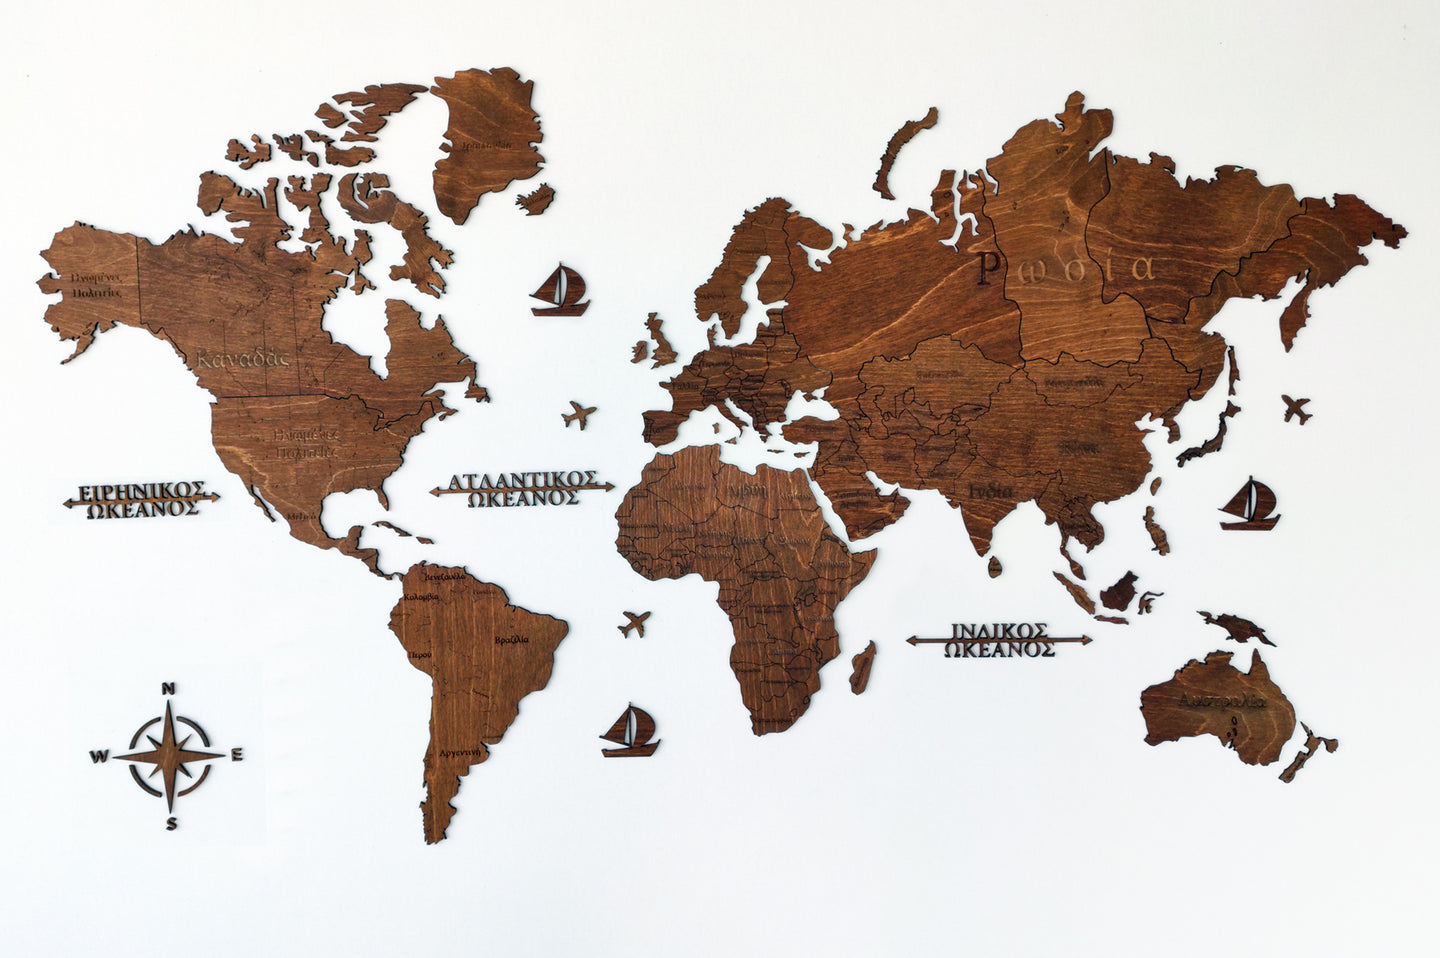 Ξύλινος παγκόσμιος χάρτης τοίχου ΚΑΣΤΑΝΙΑ - (115 x 65) / Με ονόματα